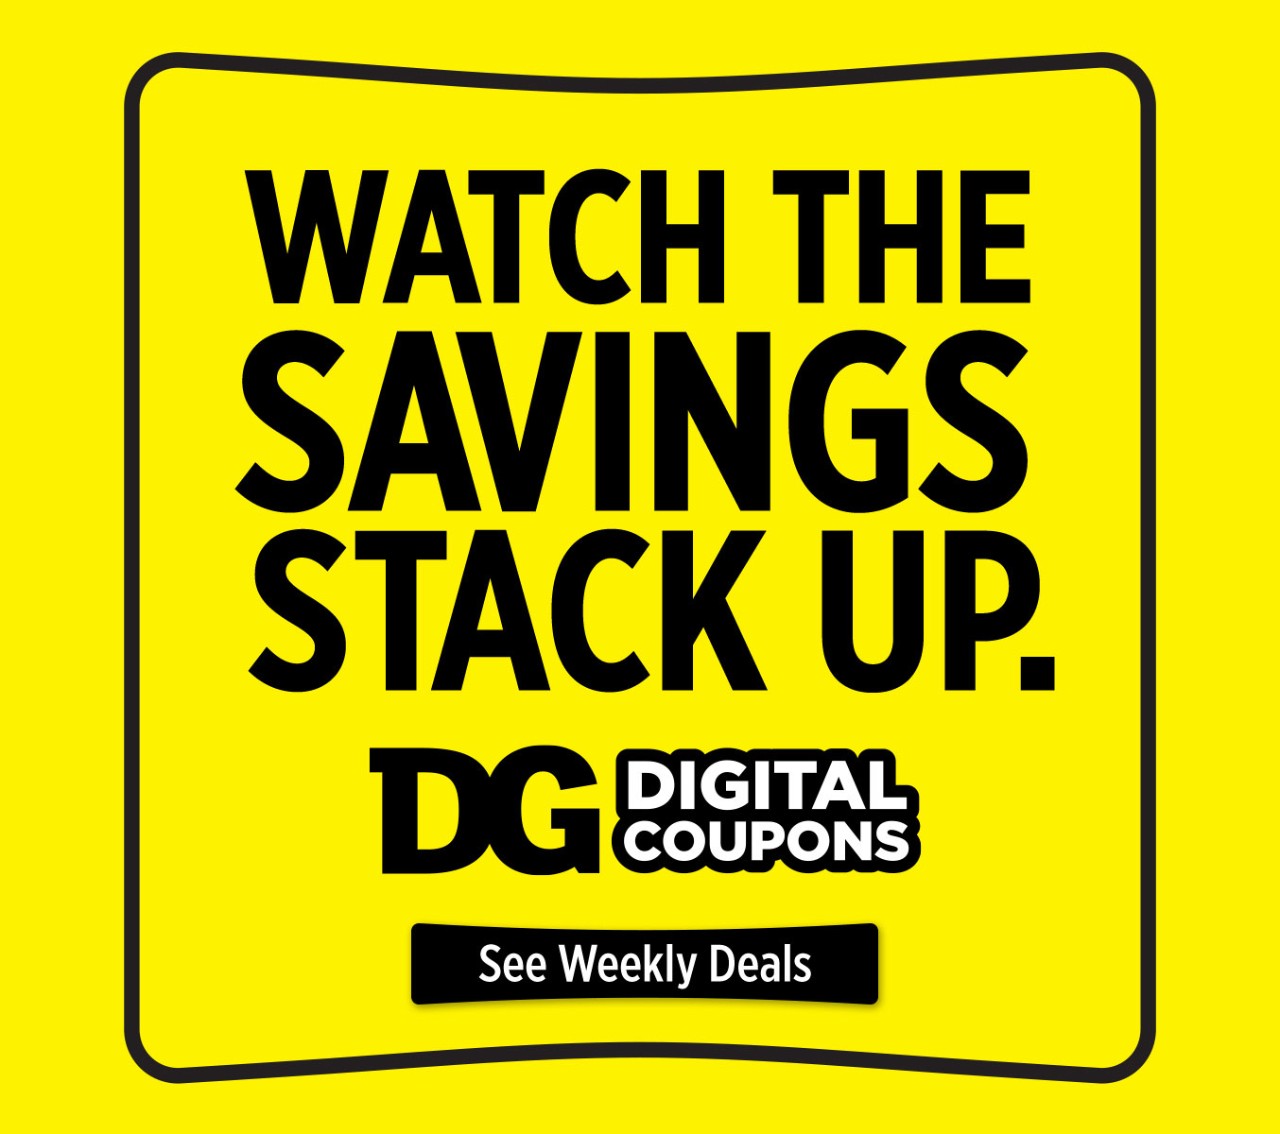 DGDC digital coupons